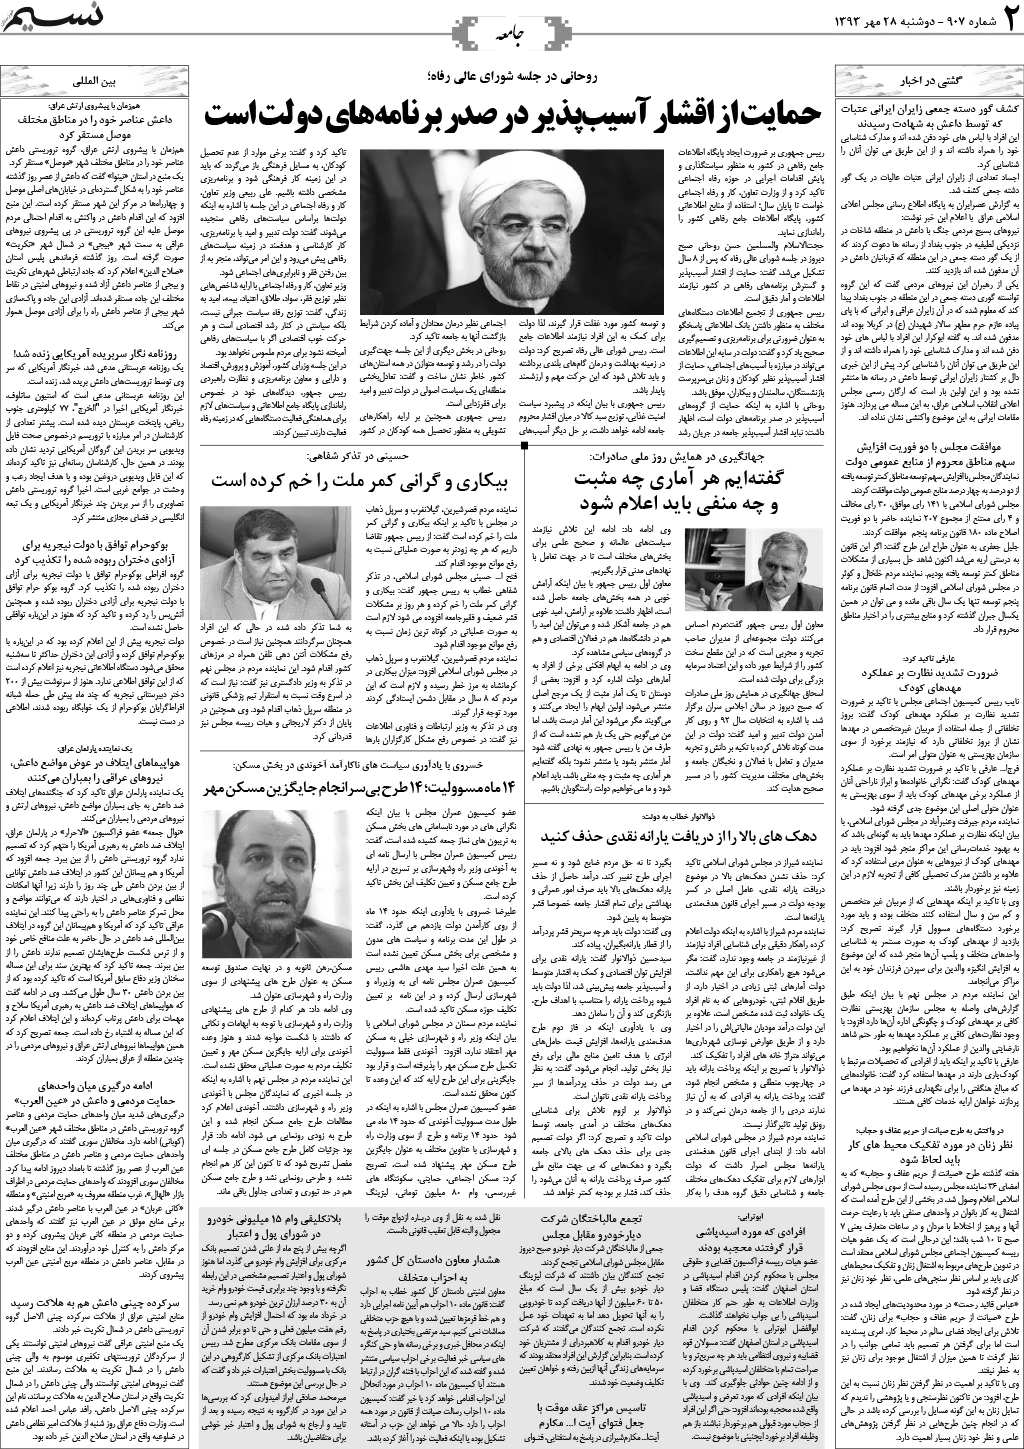 صفحه جامعه روزنامه نسیم شماره 907